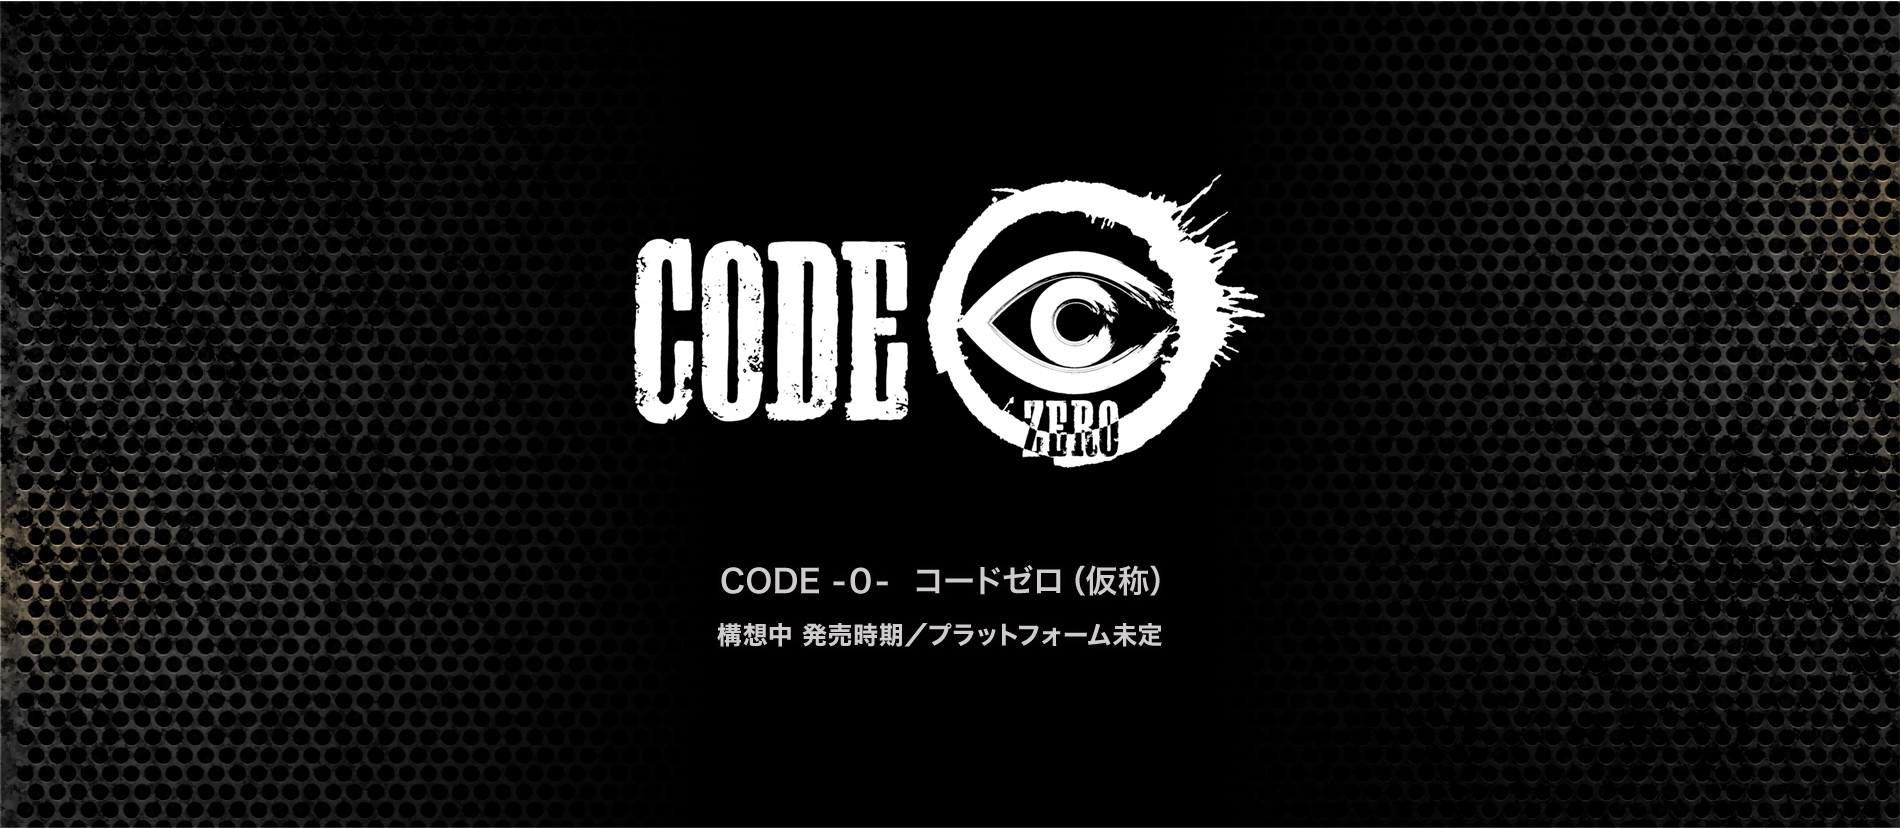 Metal-Max-Code-Zero_2019_10-01-19_001.pn